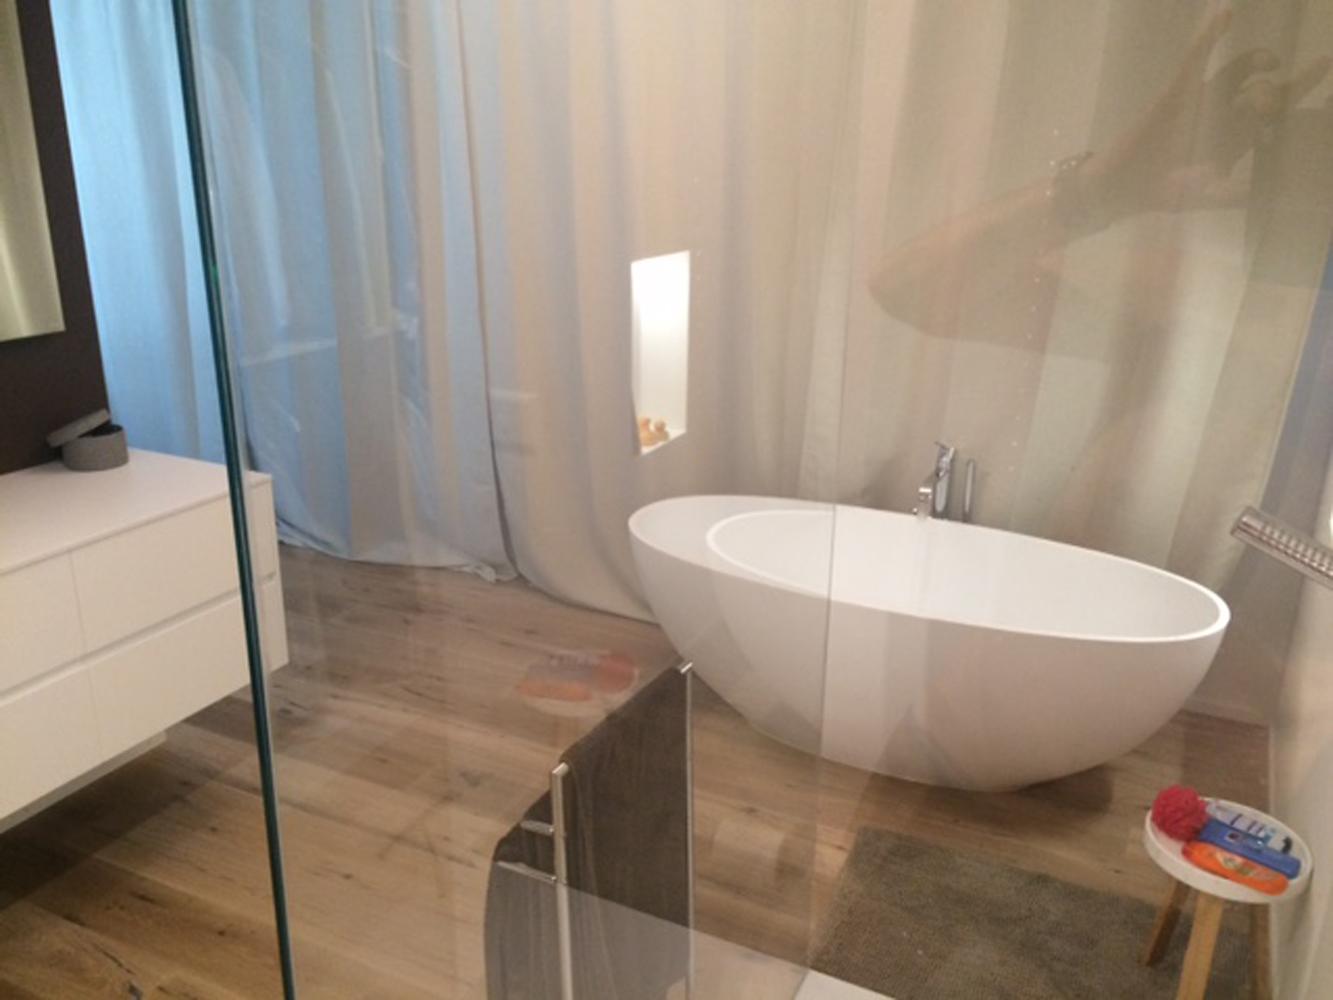 Badezimmer mit Piemont Medio #badewanne #badezimmer ©Bädermax